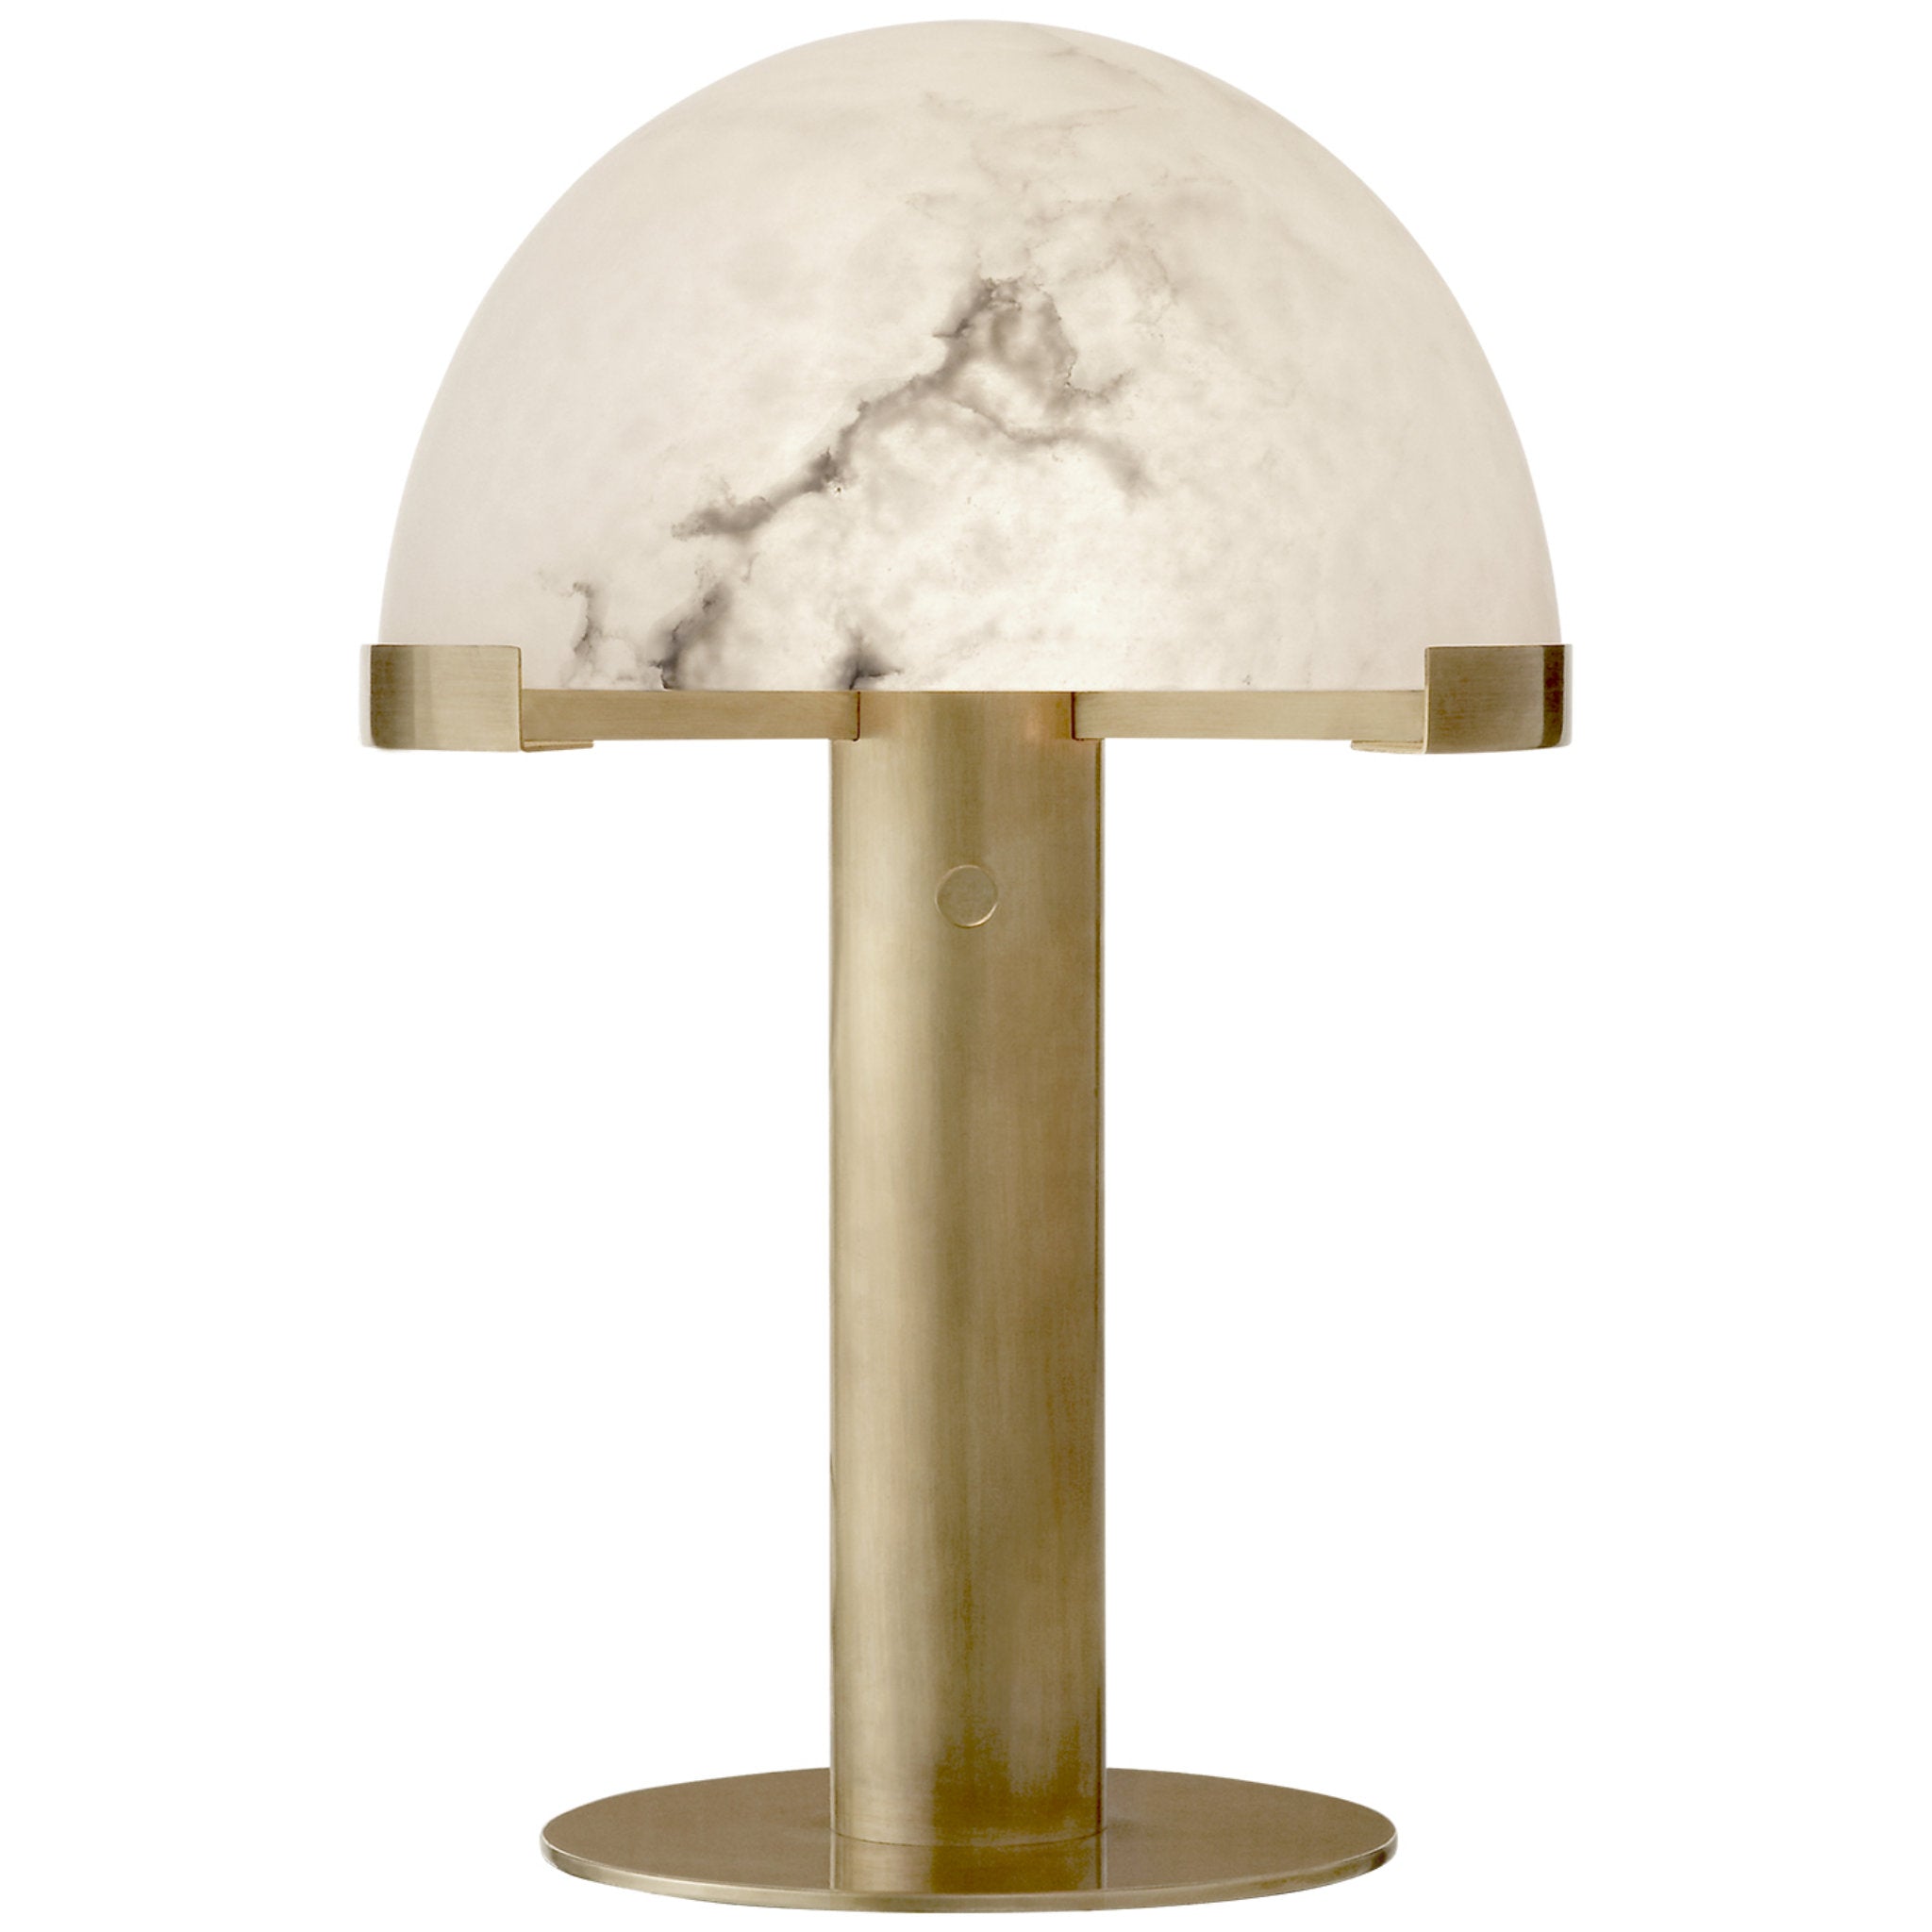 Kelly Wearstler Melange Desk Lamp in Antique-Burnished Brass with Alabaster Shade